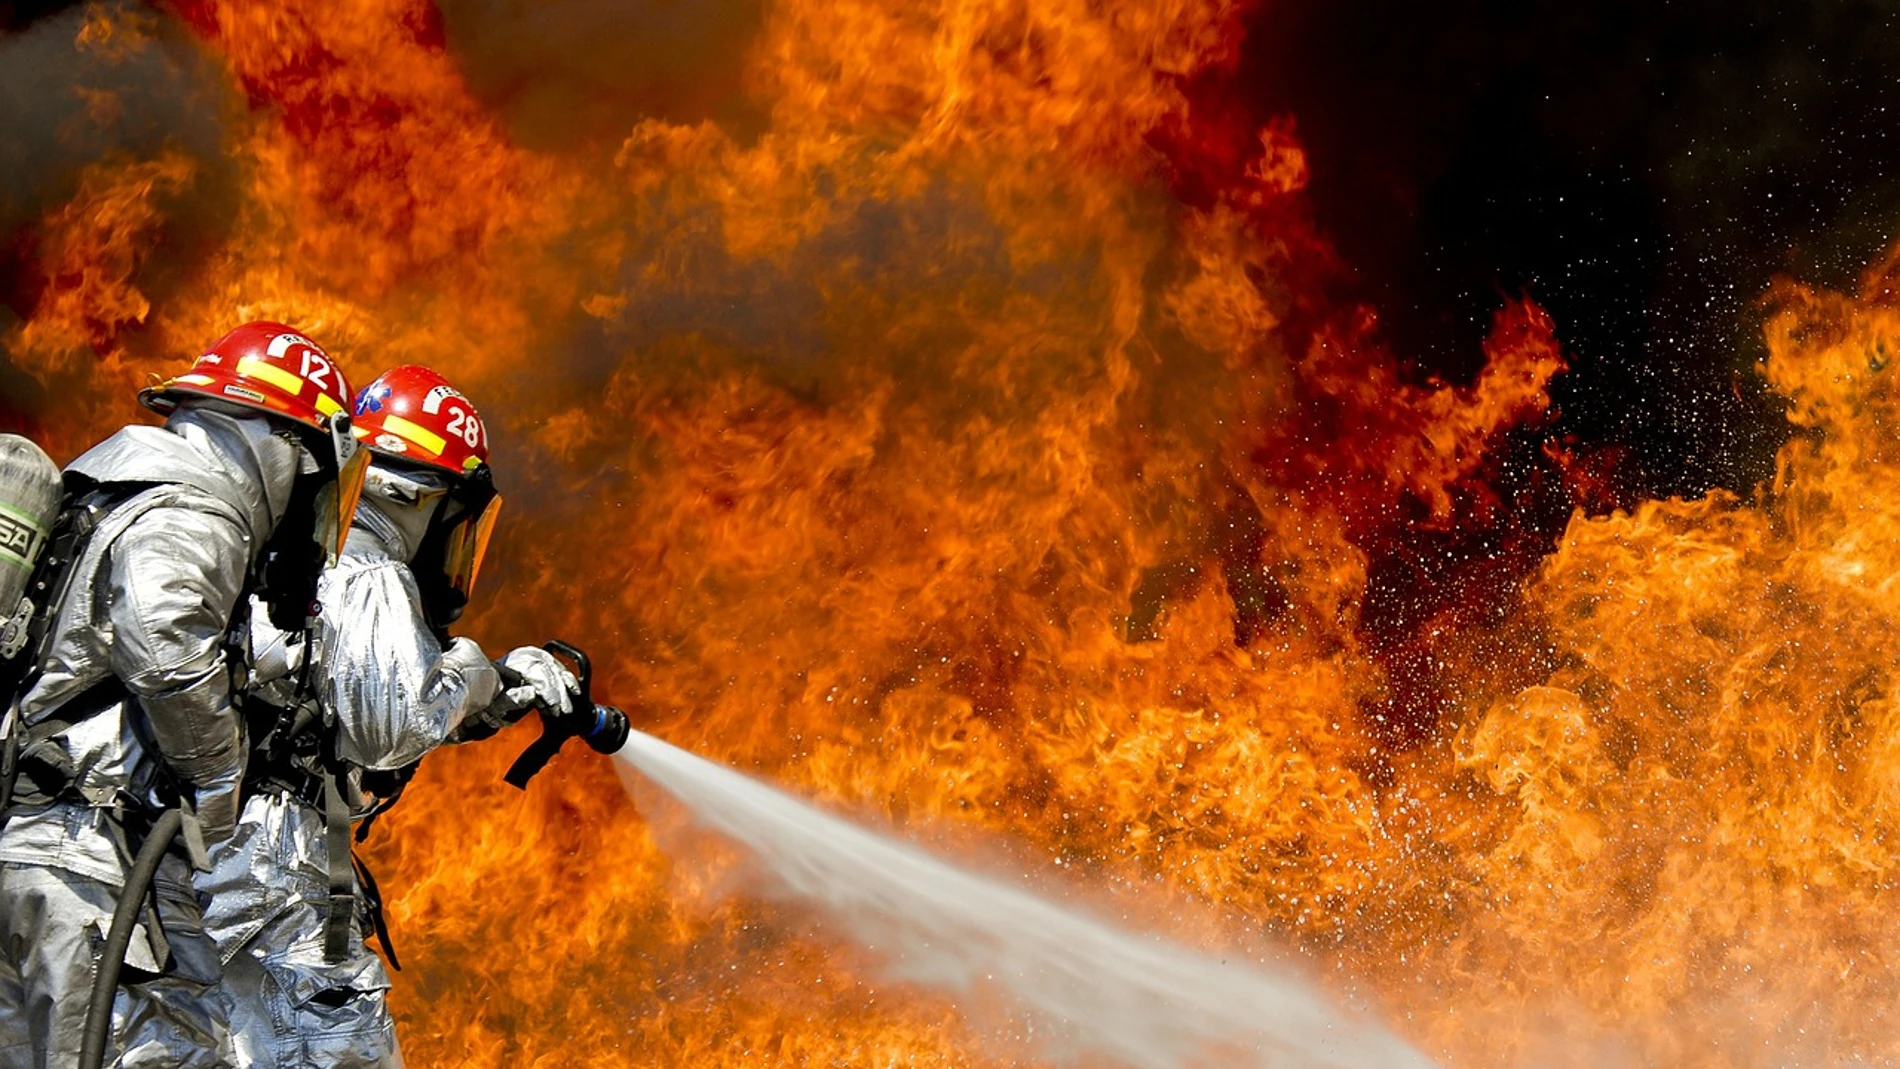 La ola de calor aviva los incendios en Grecia, Turquía, Italia y Macedonia que avanzan sin control